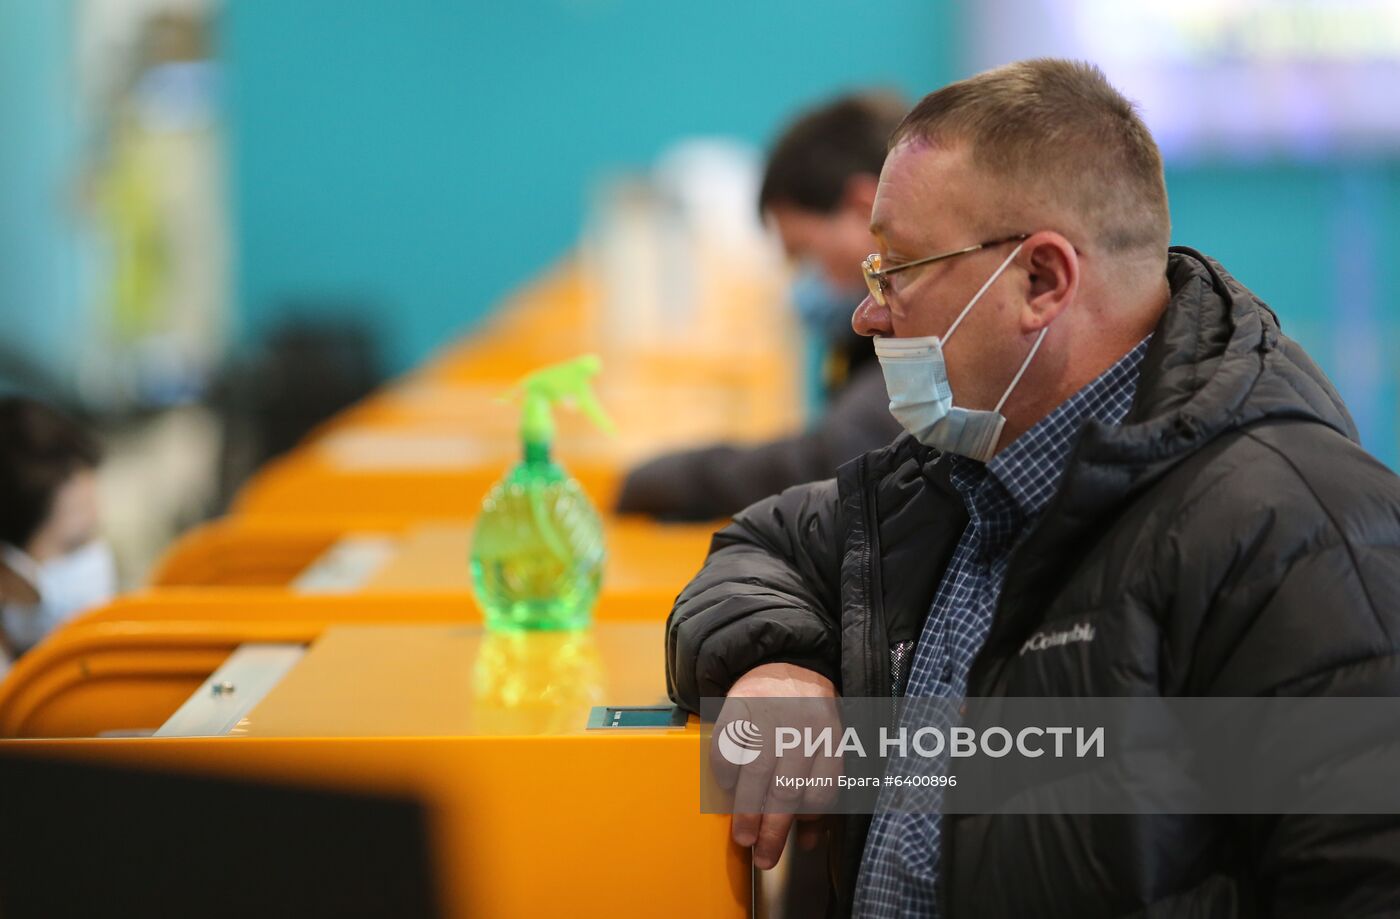 Международный аэропорт Волгограда в период пандемии коронавируса